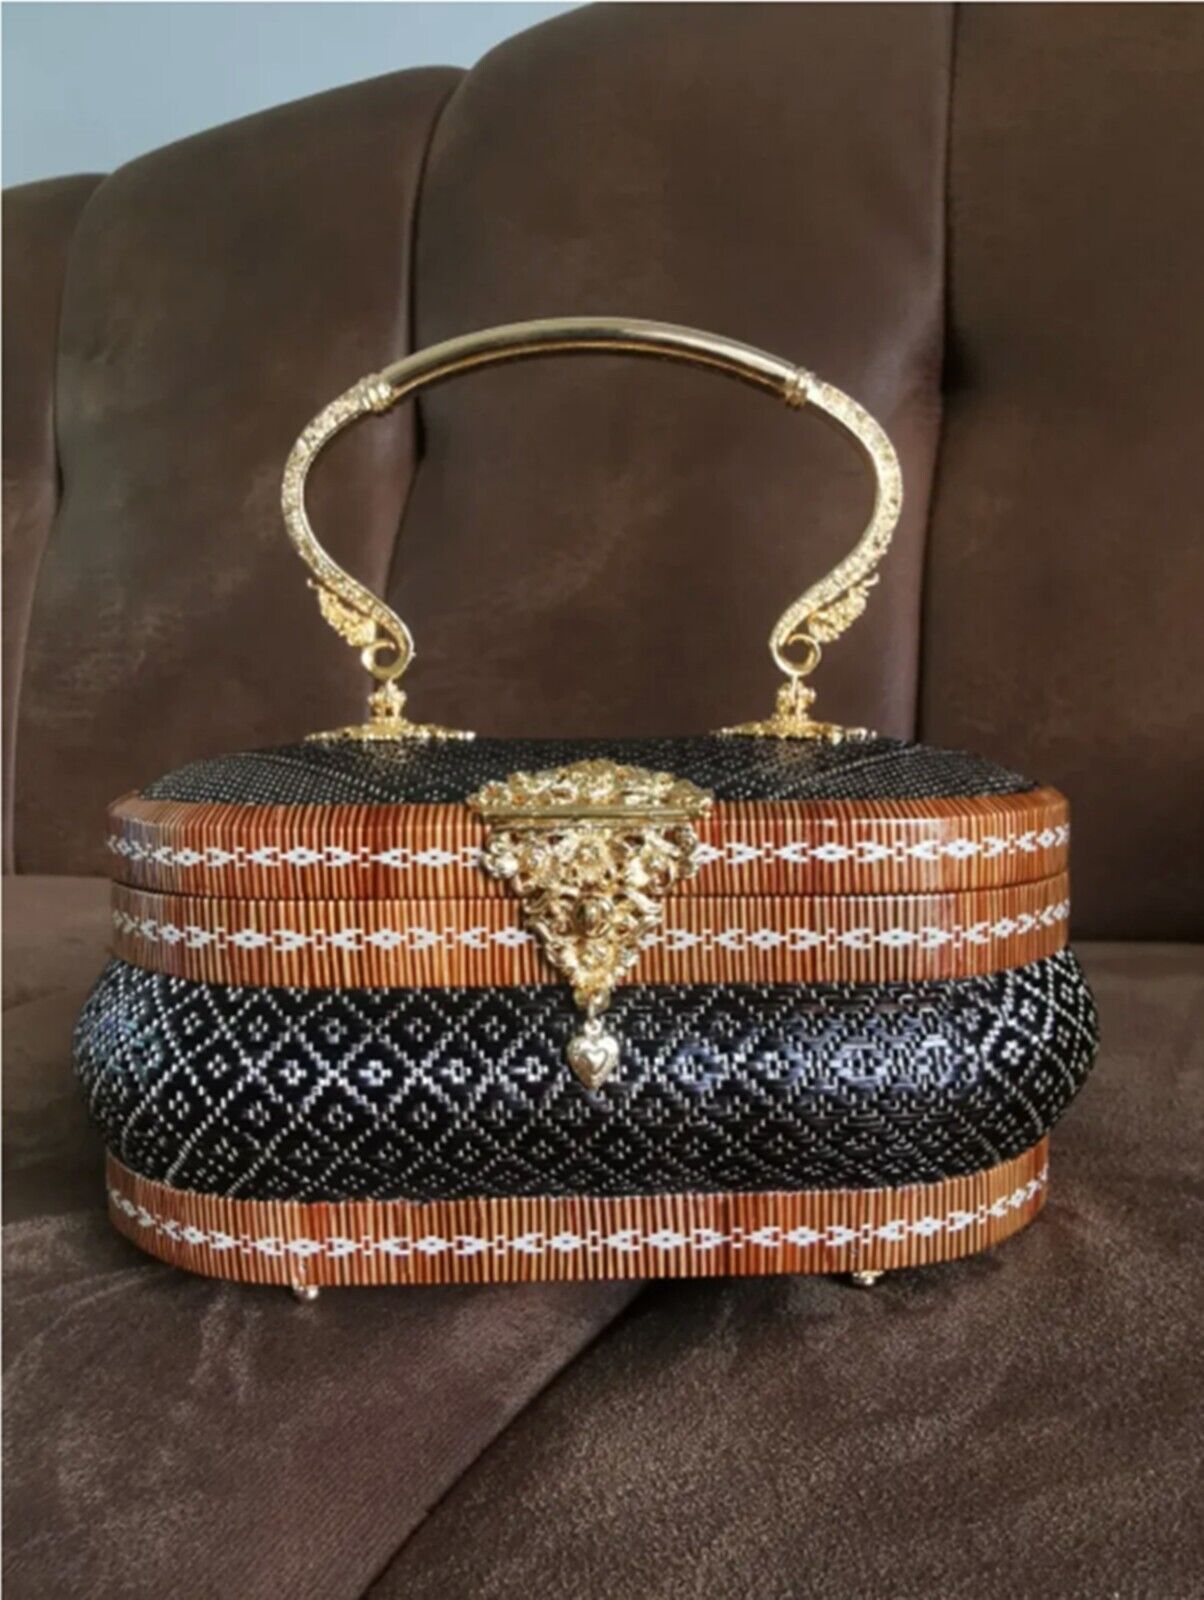 Yanlipao Hand Bag Thai HandmadeTraditional Premium Handicraft Luxury Gift